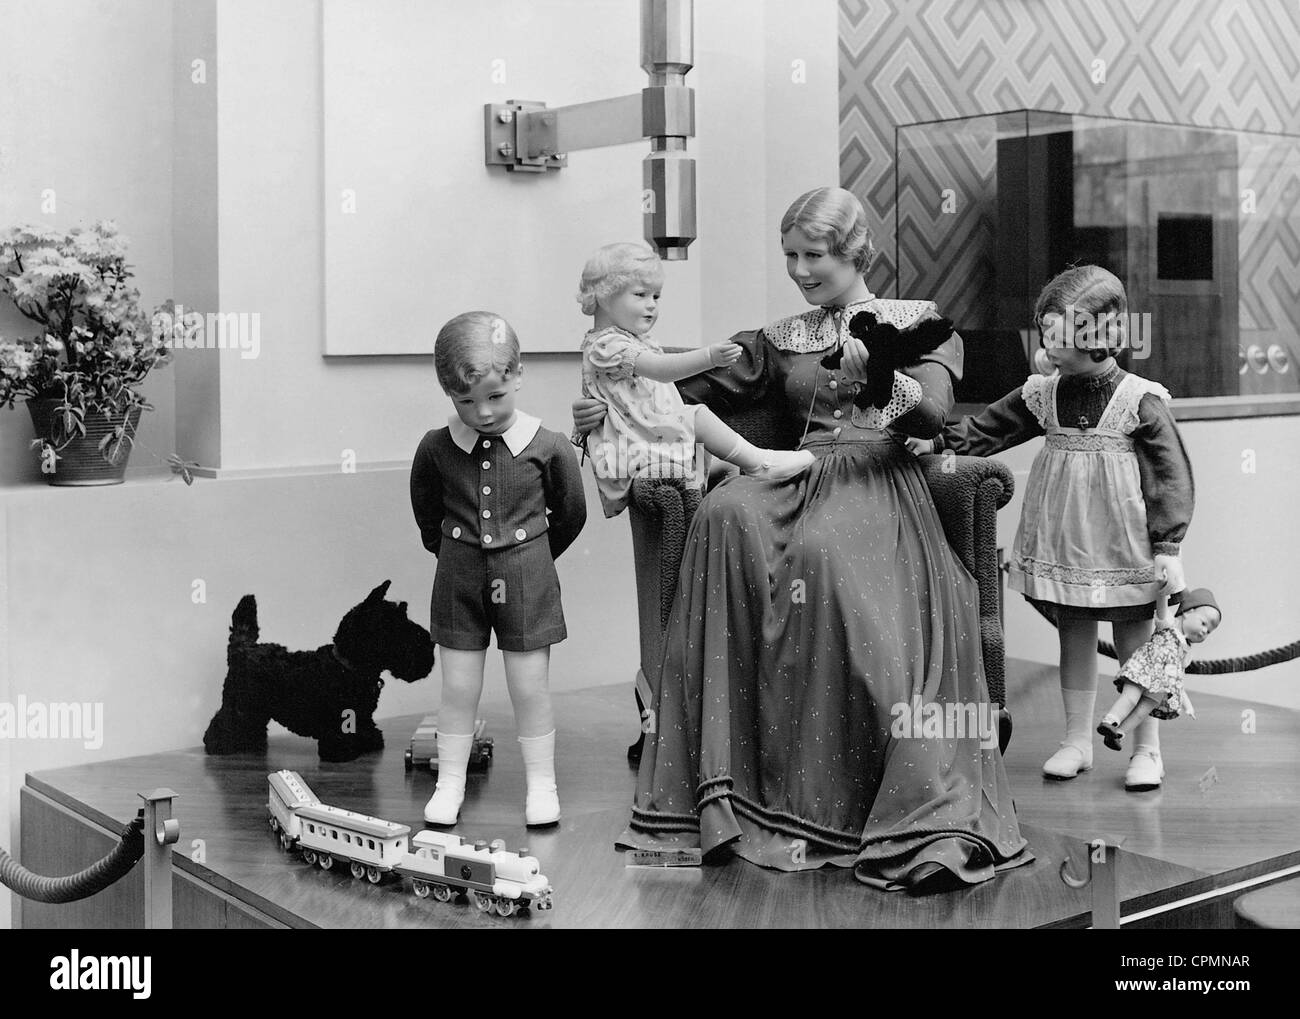 Kathe Kruse poupées dans le pavillon allemand, 1937 Banque D'Images